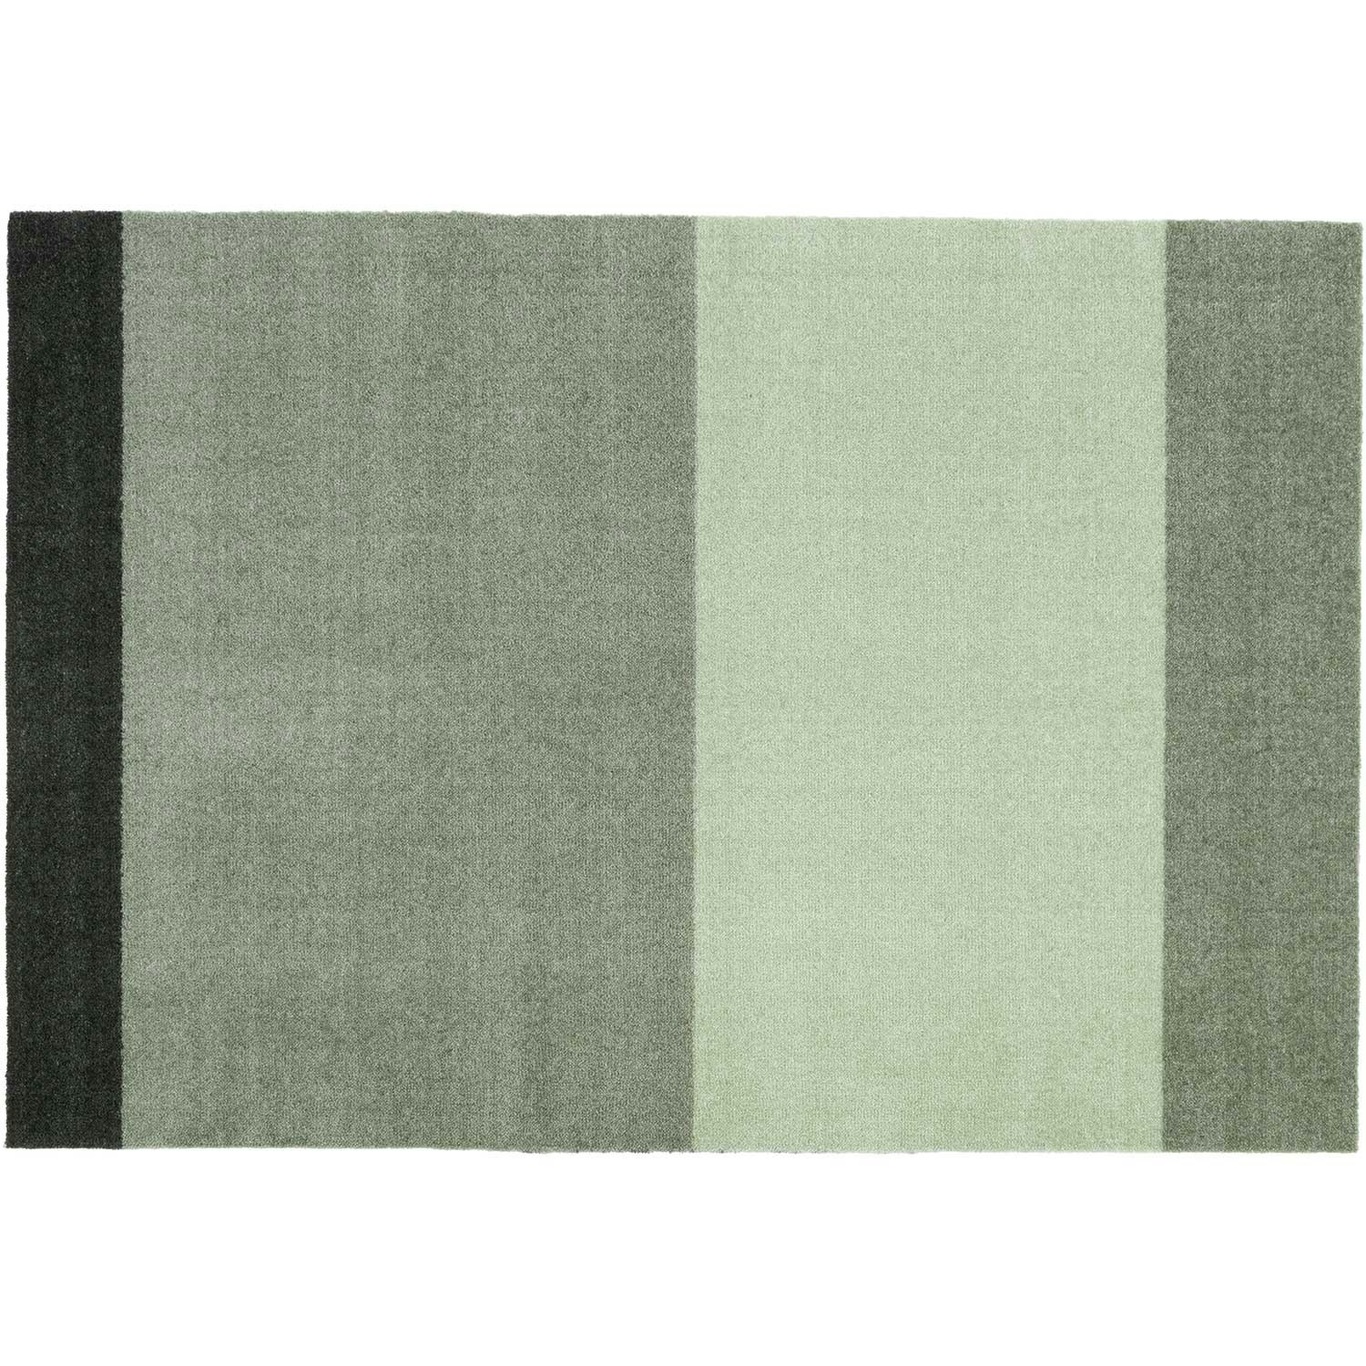 Stripes Matto Vaaleanvihreä / Tummanvihreä, 90x130 cm